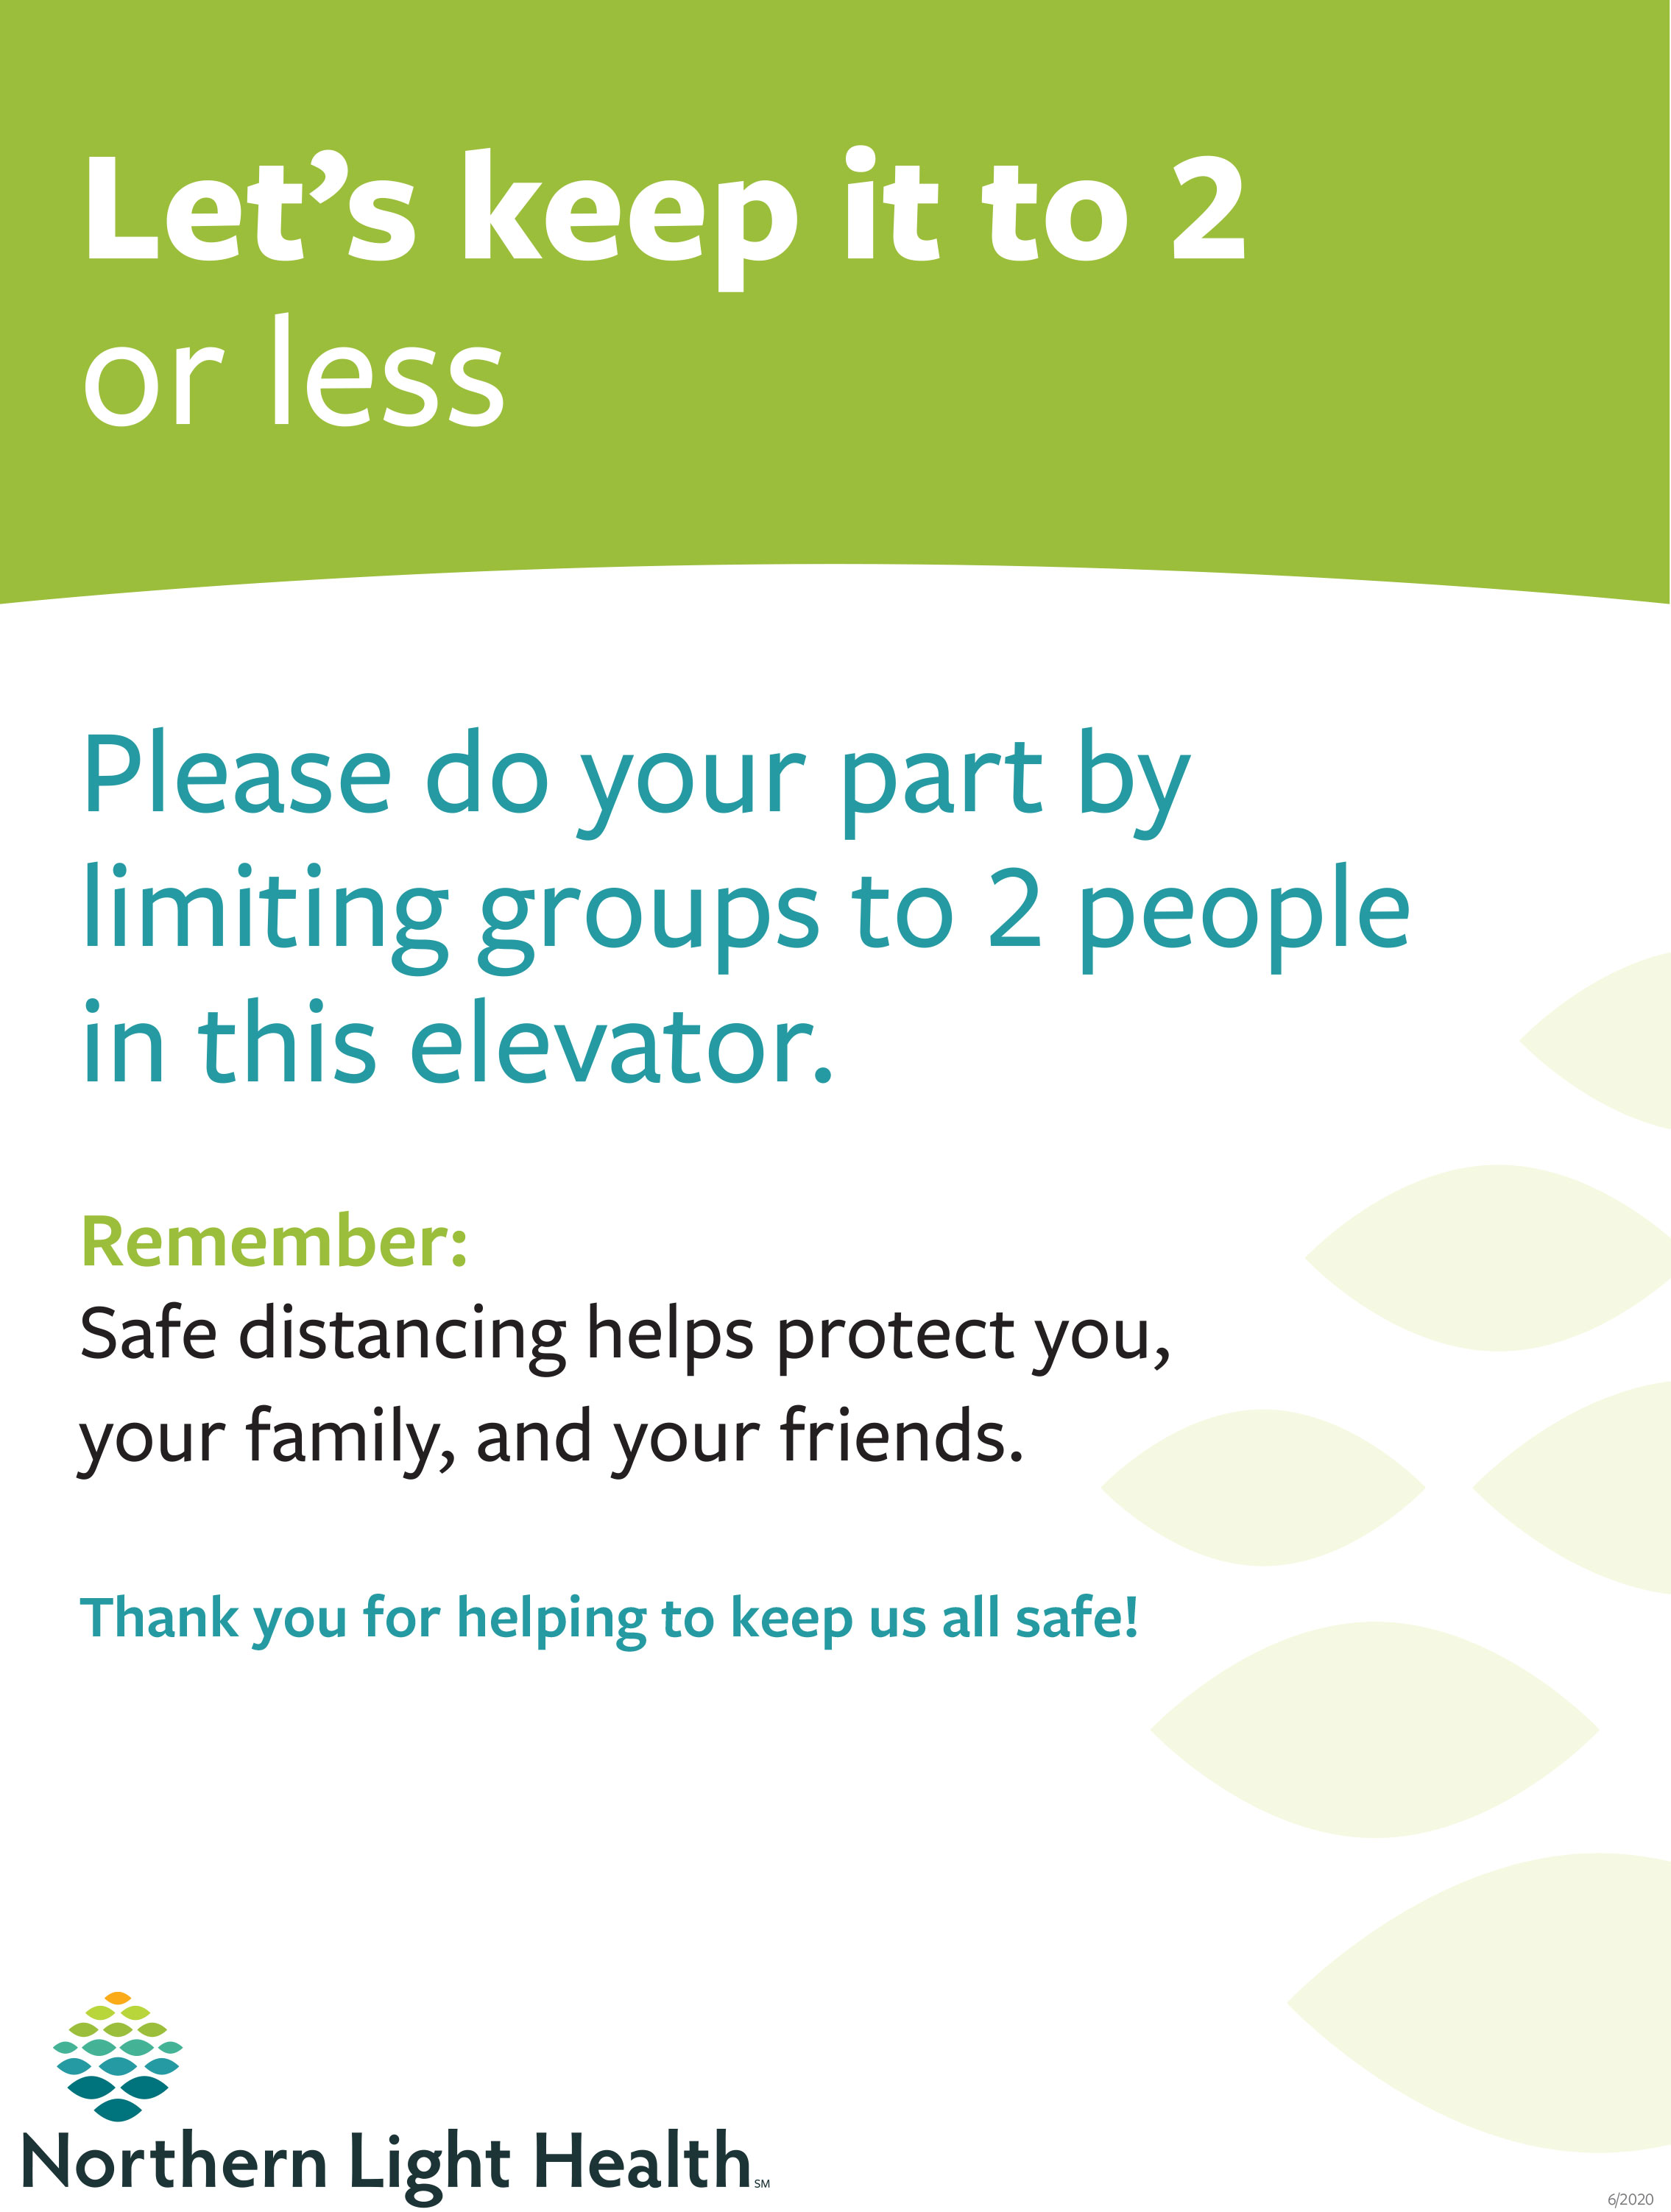 Restricting people in elevators